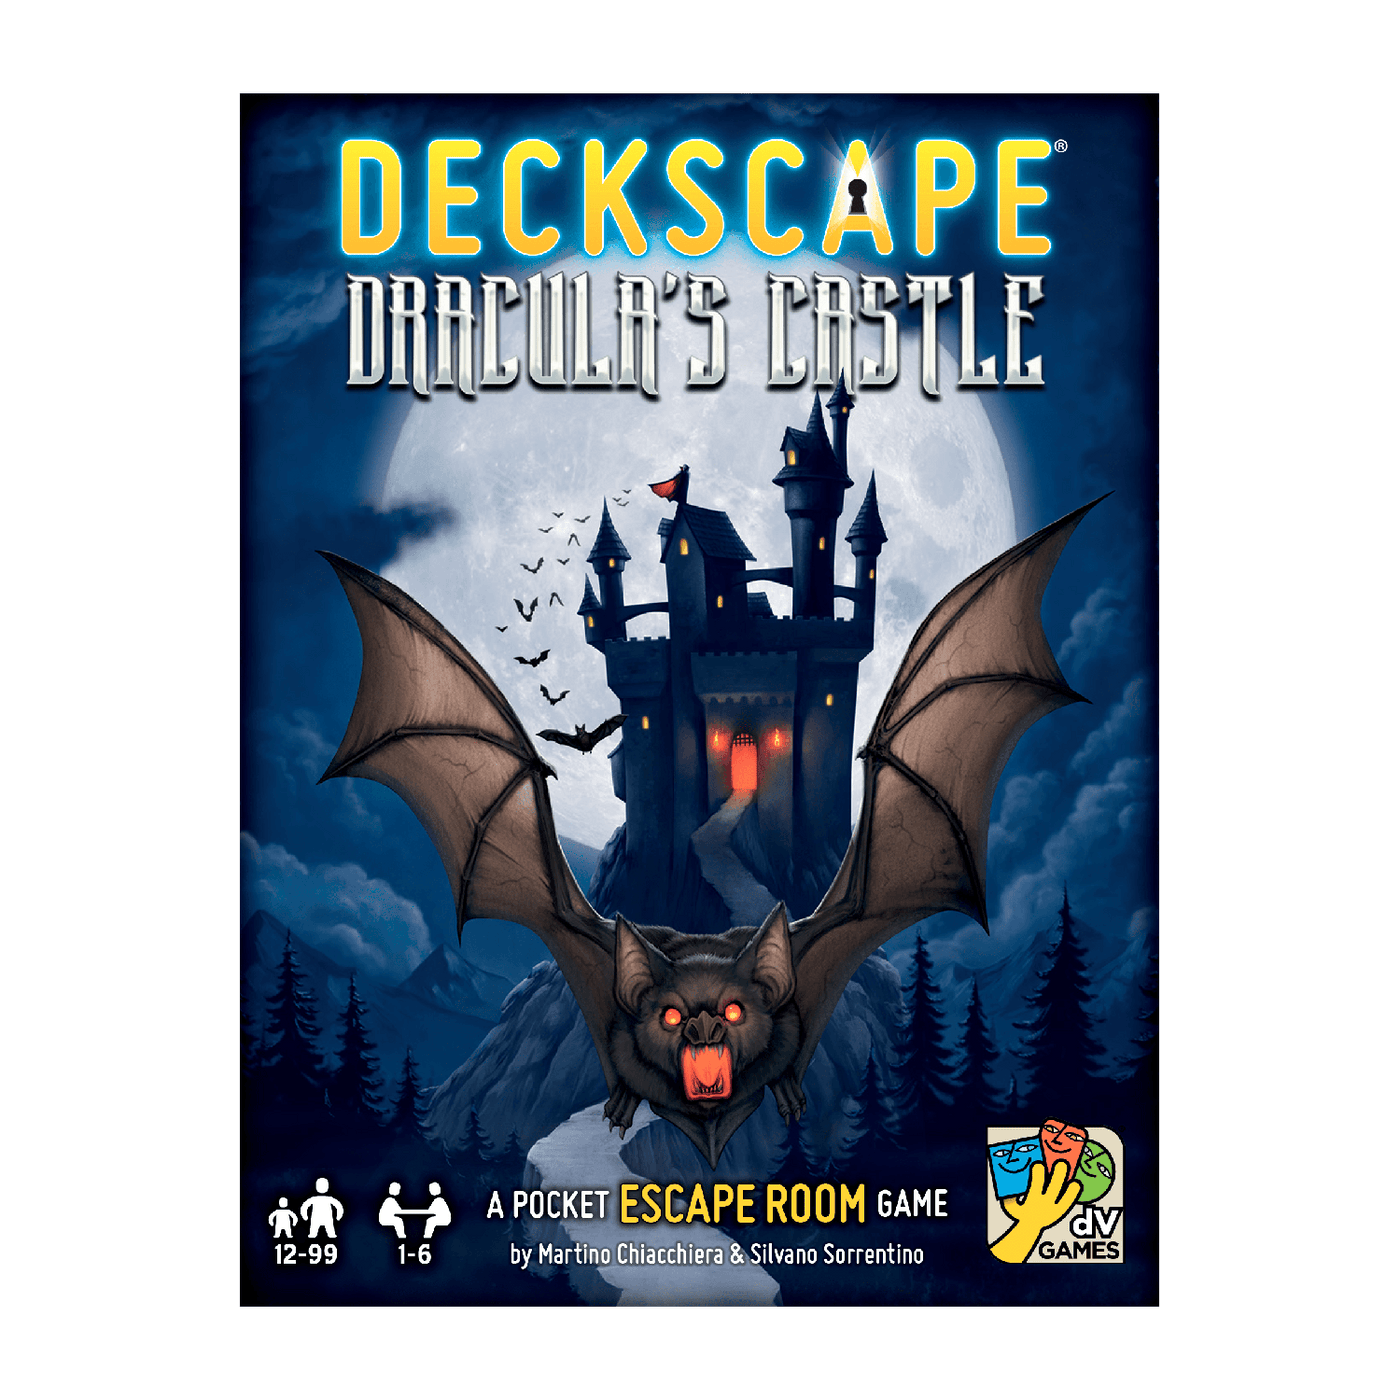 Deckscape: Dracula's Castle